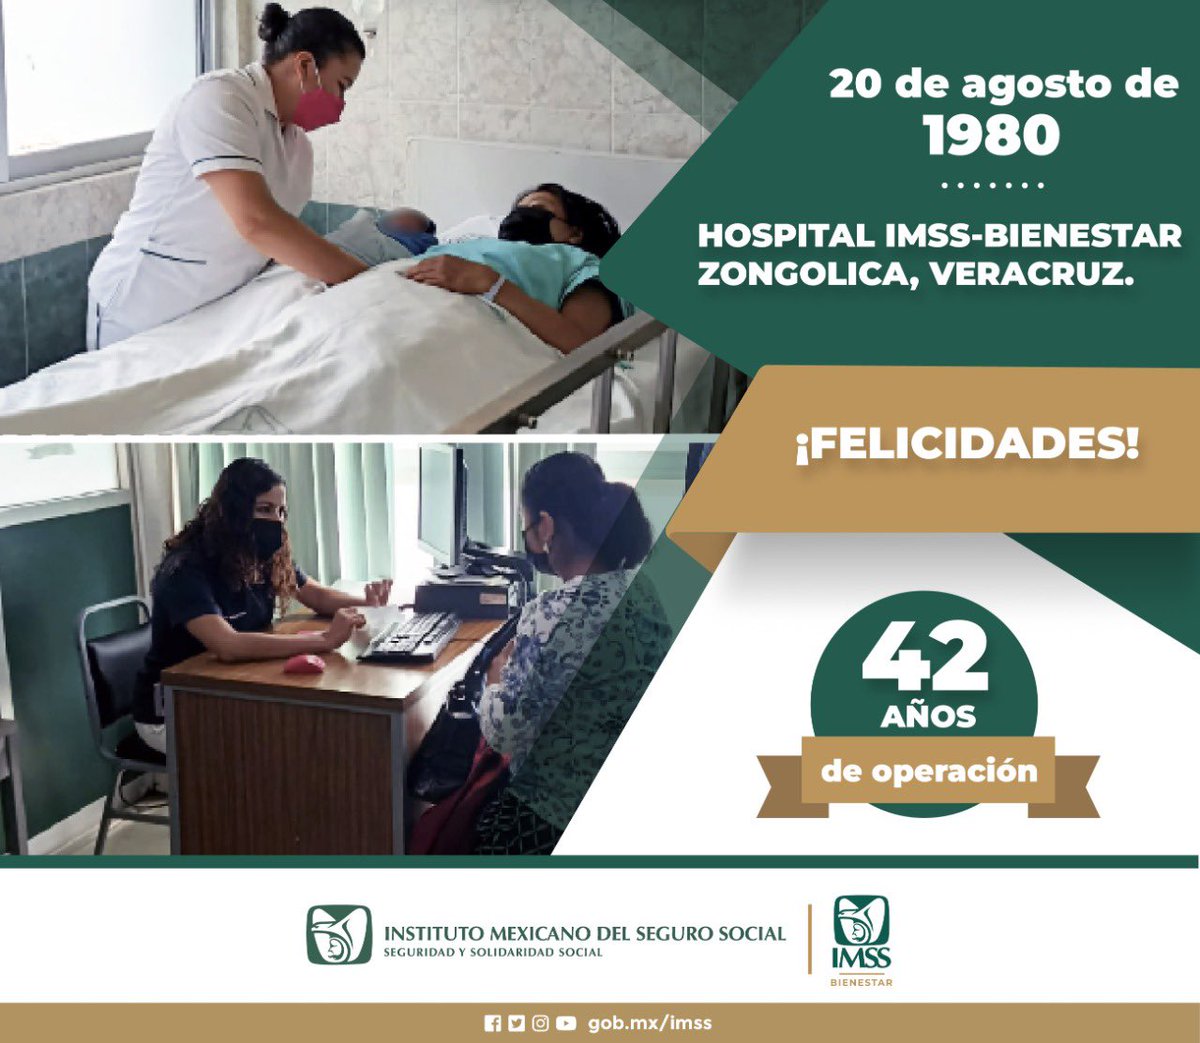 Hoy el Hospital #IMSSBIENESTAR Zongolica en #Veracruz cumple 42 años de operación. ¡Muchas felicidades!